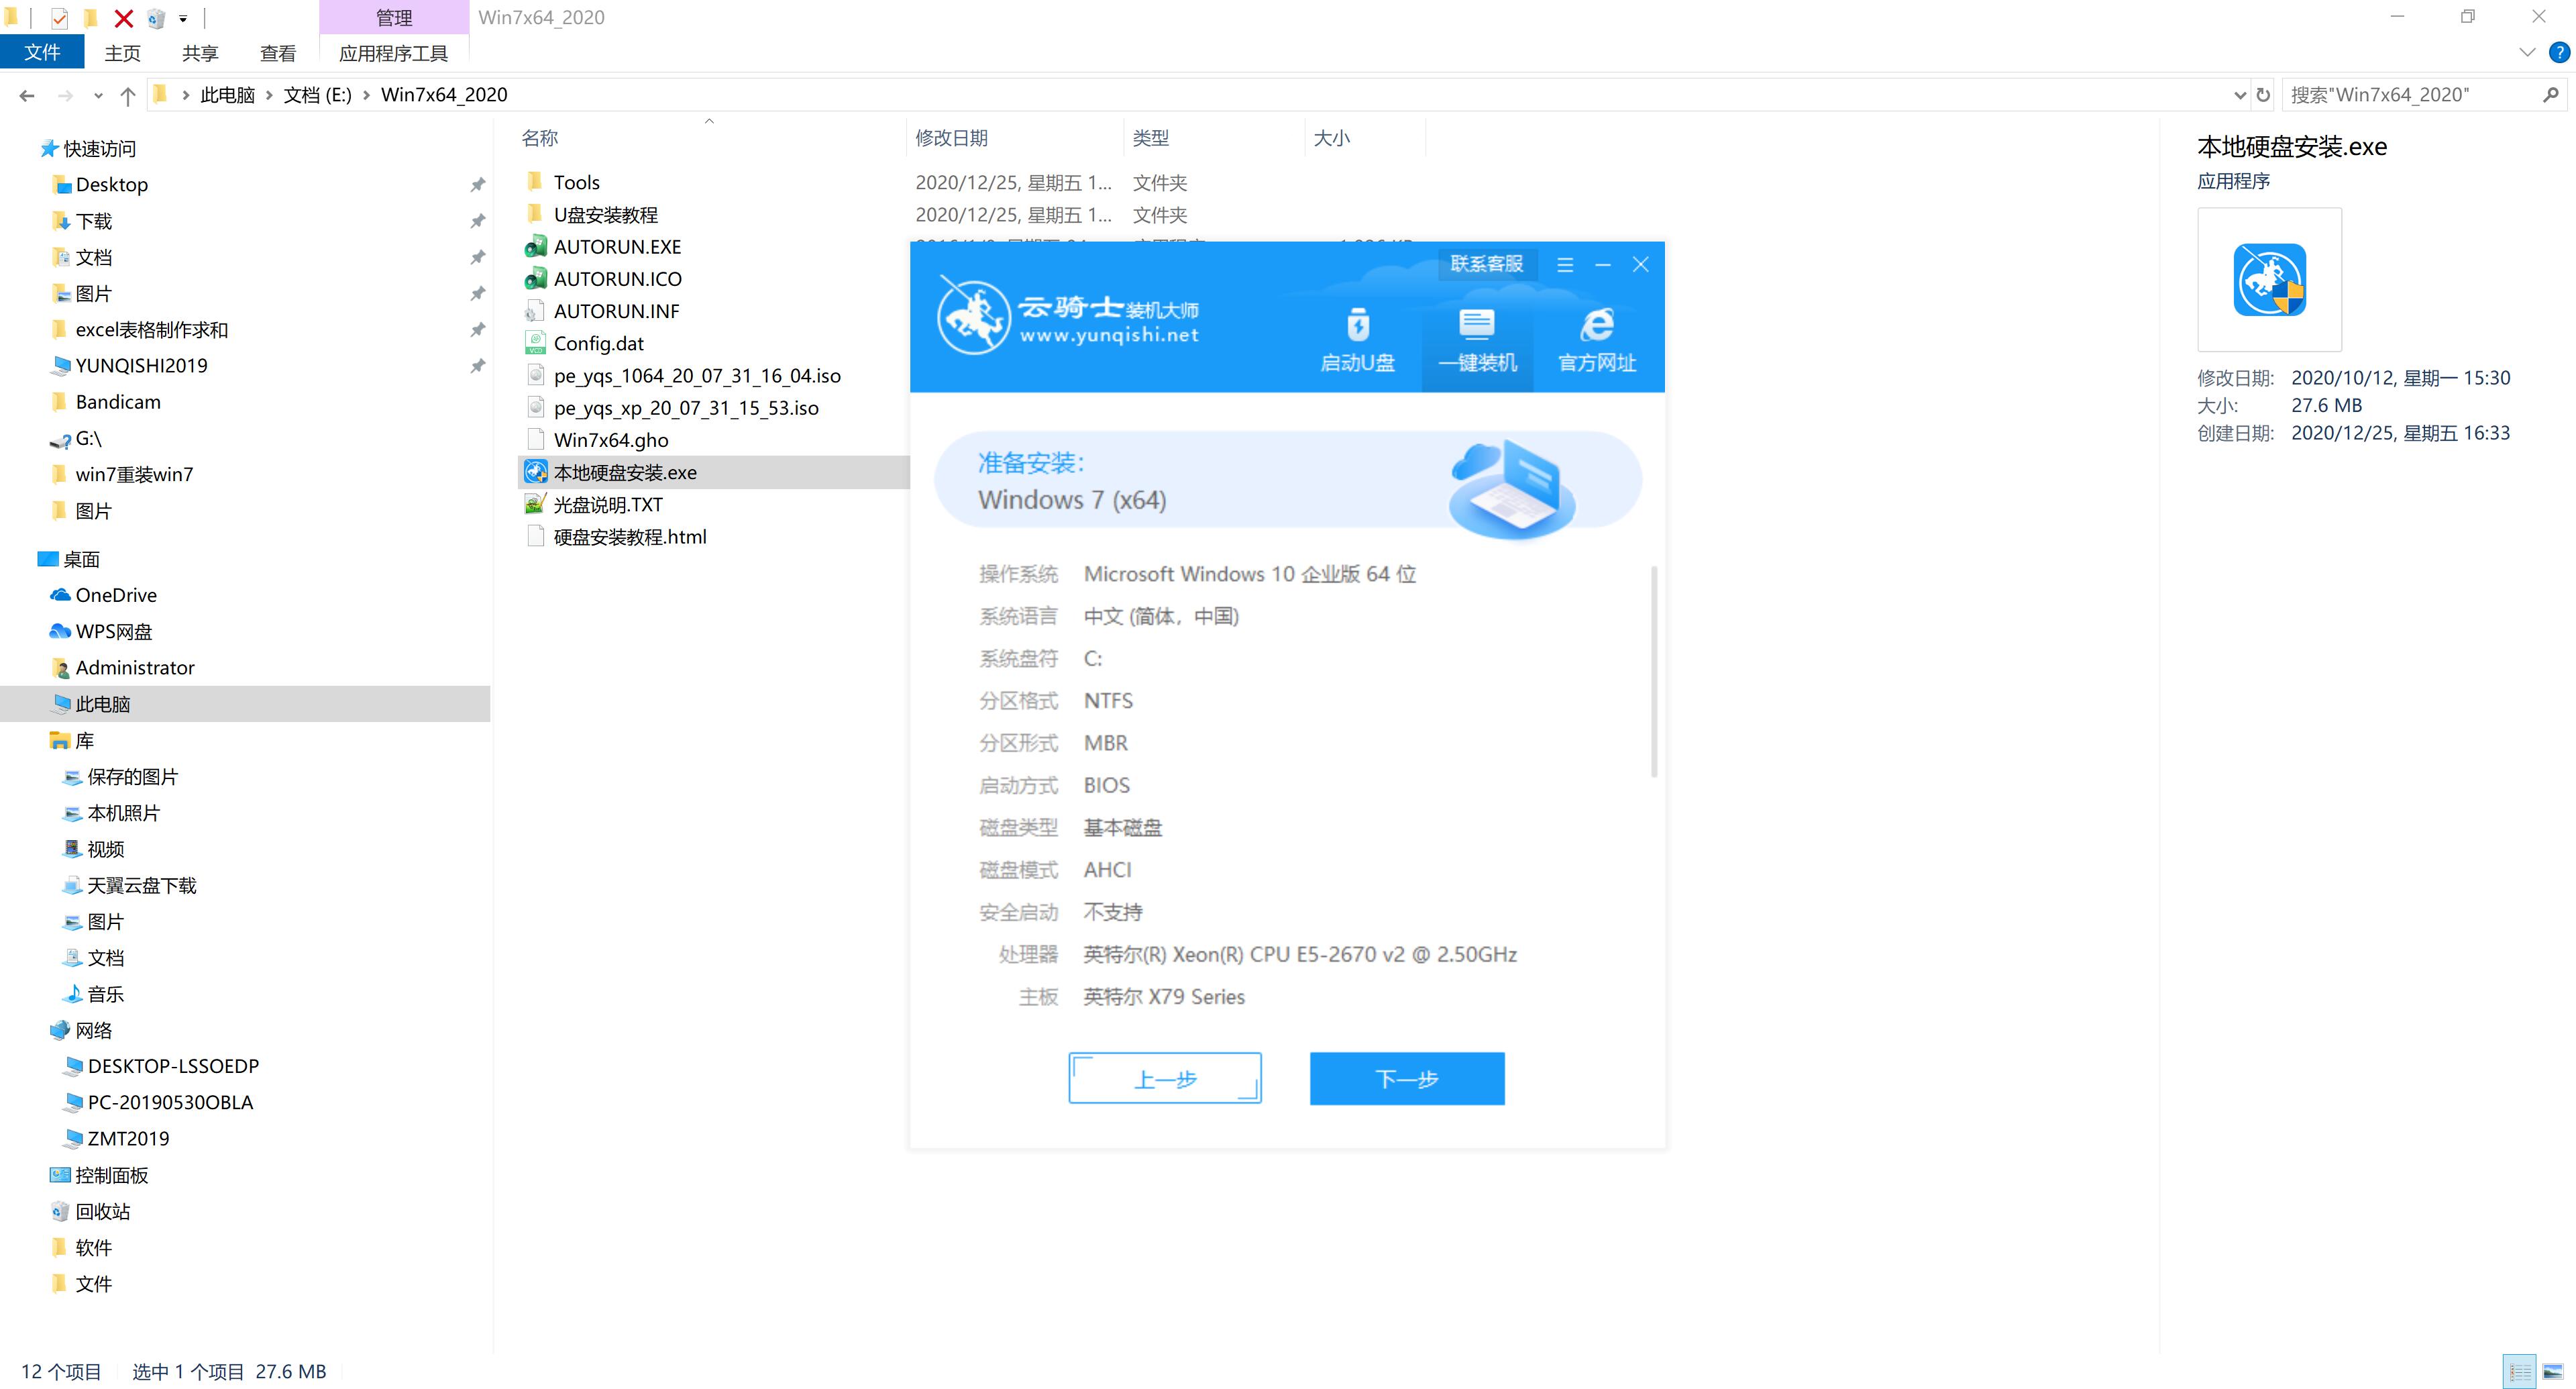 新戴尔笔记本专用系统 GHOST Window7 X64 SP1 装机旗舰版下载 V2021.03(4)